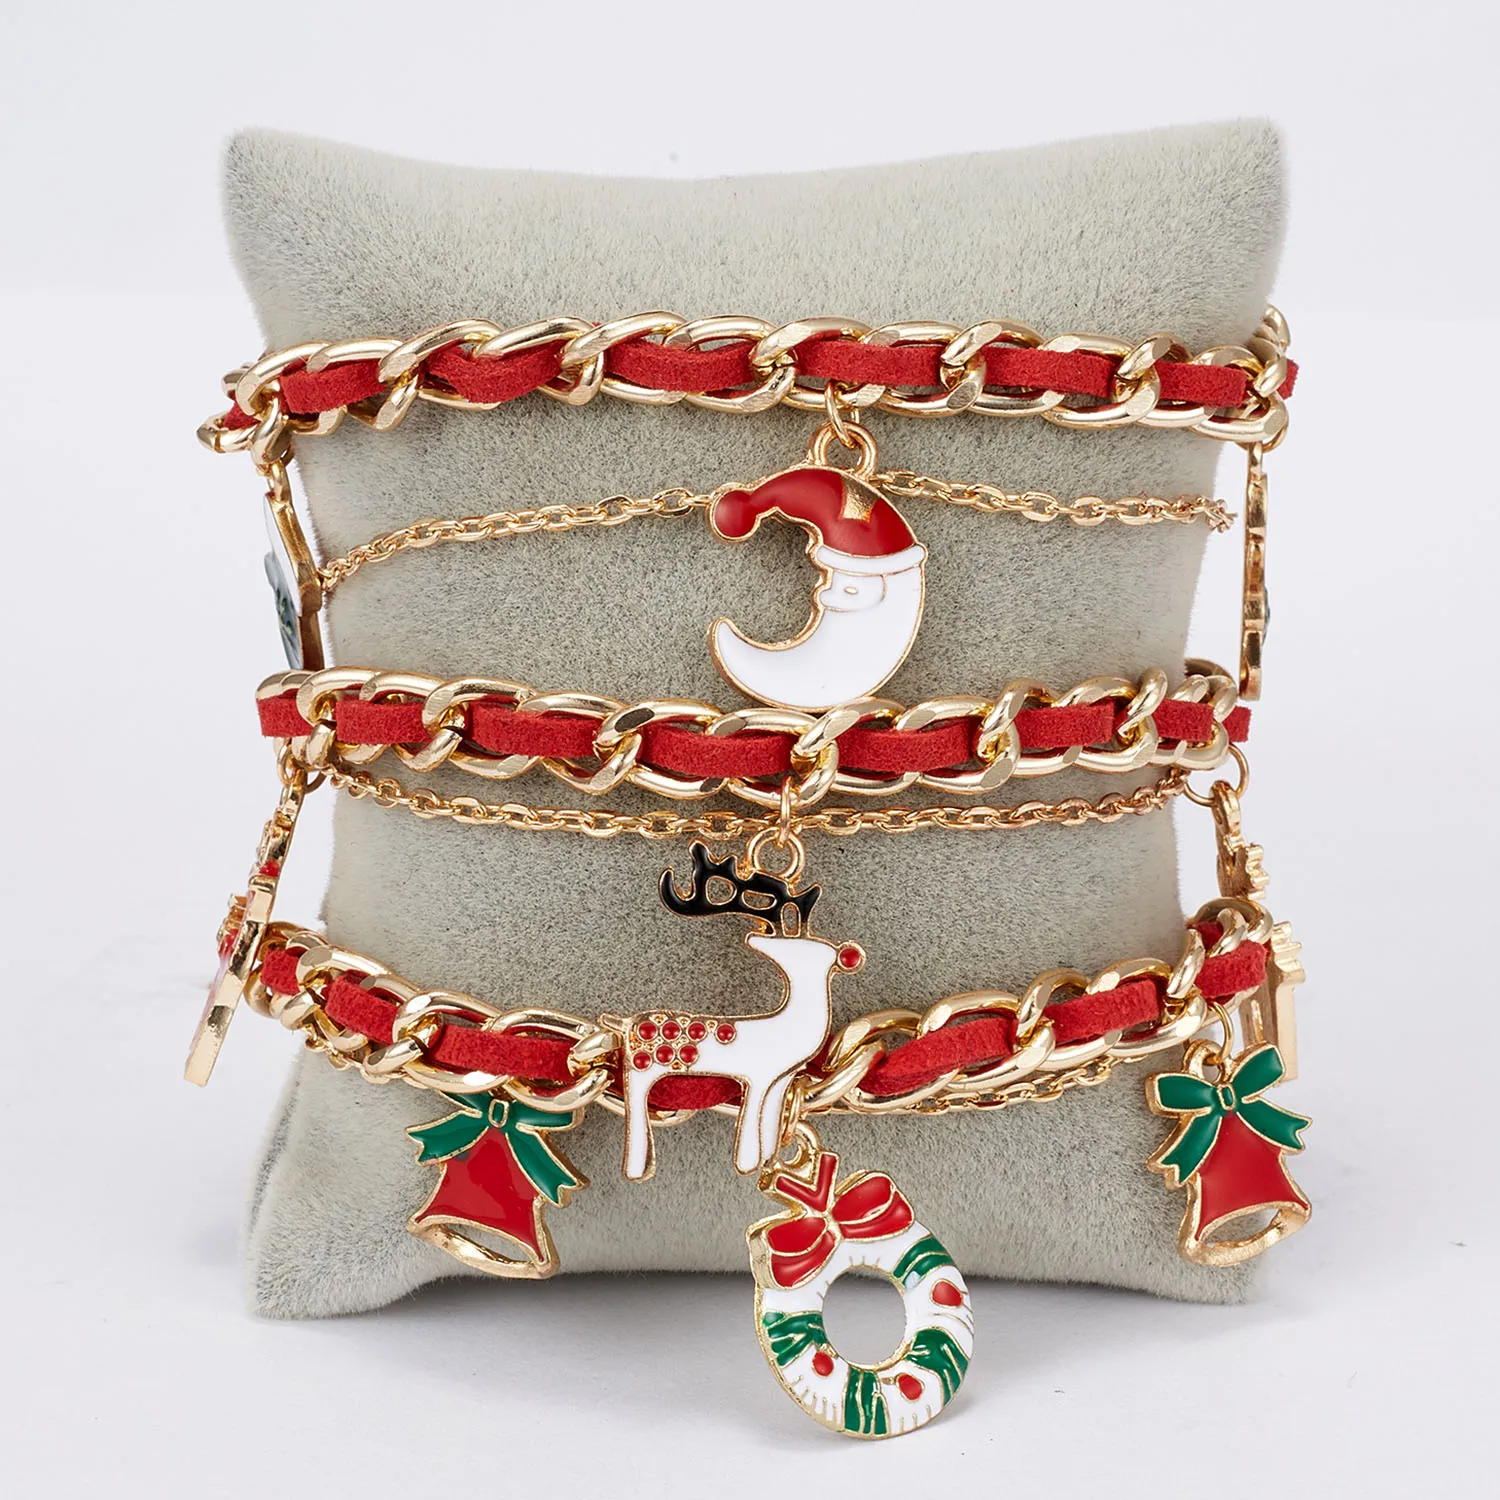 Rinhoo Рождество Санта Клаус Браслет красная цепочка Шарм Лось Луна венок звено цепи браслеты для женщин девочек подарок на год ювелирные изделия